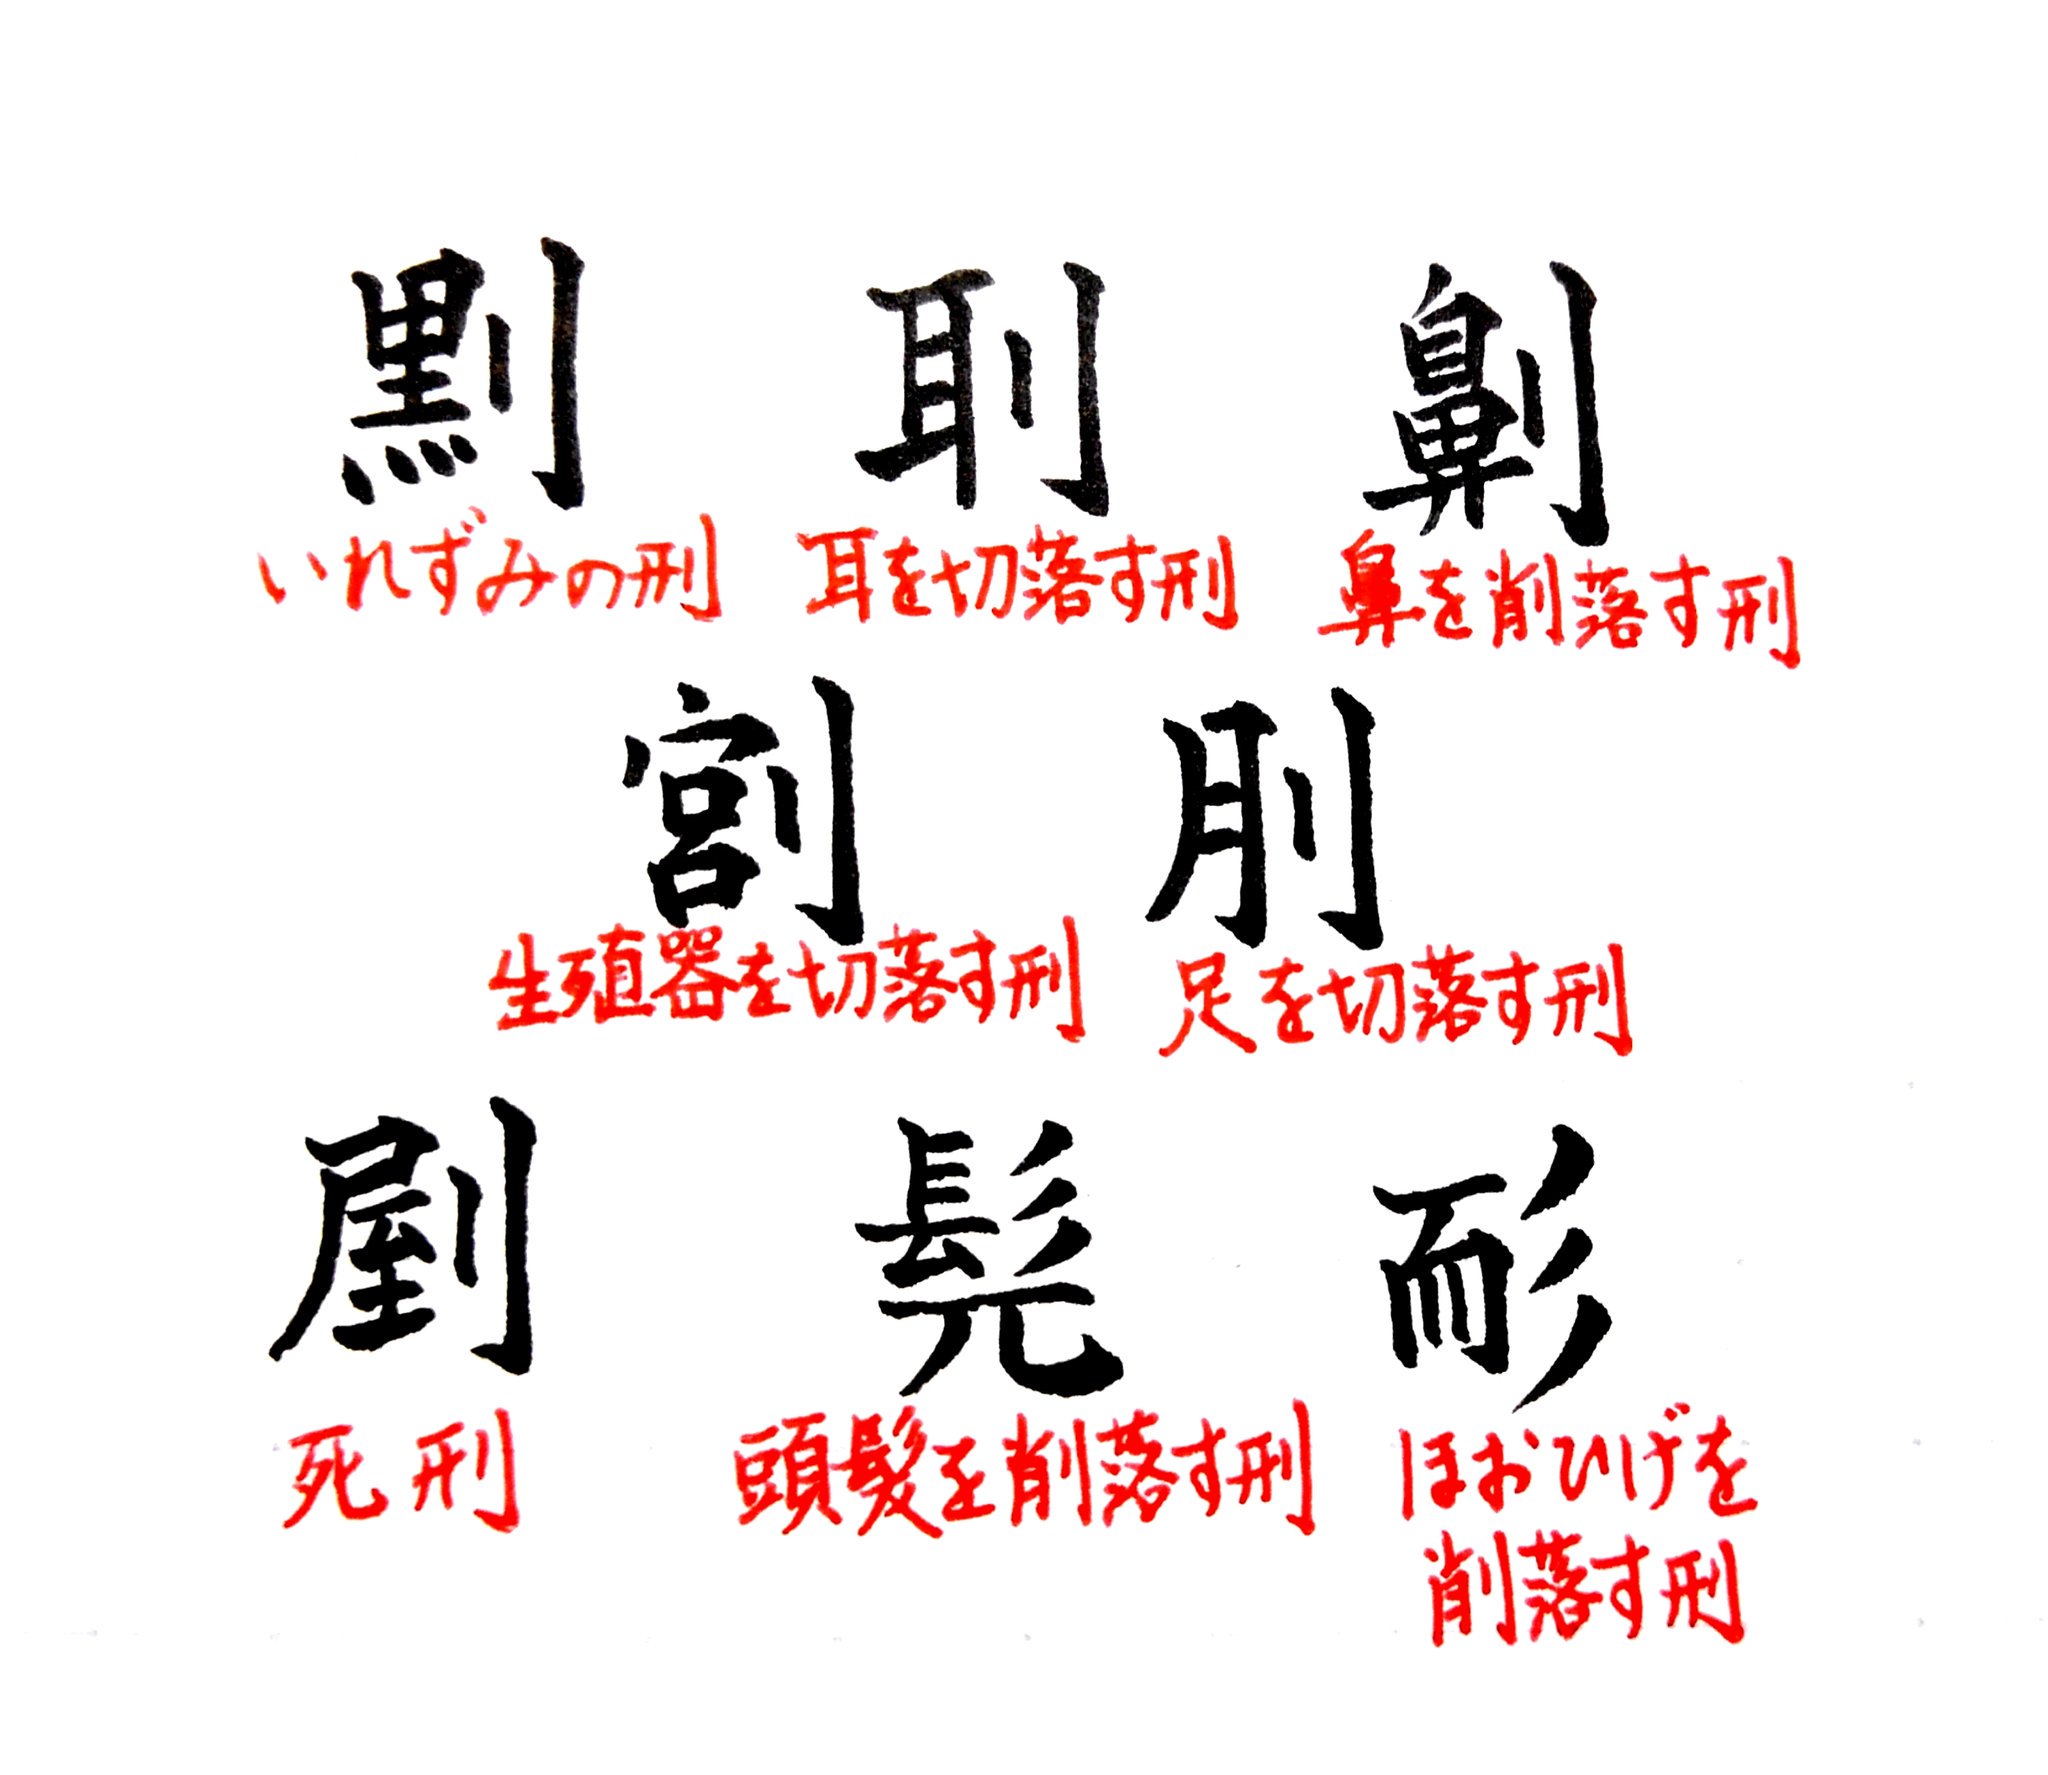 拾萬字鏡 67 64画の漢字 書き方により画数は変化する 字書や韻書にのる最高画数の漢字 64画の漢字 が複数あるのは中国の六十四卦の数を意識したものではないかとする説もある 龍を４つ書く漢字 興を４つ書く漢字は早く13世紀初めに成立した字書から載る